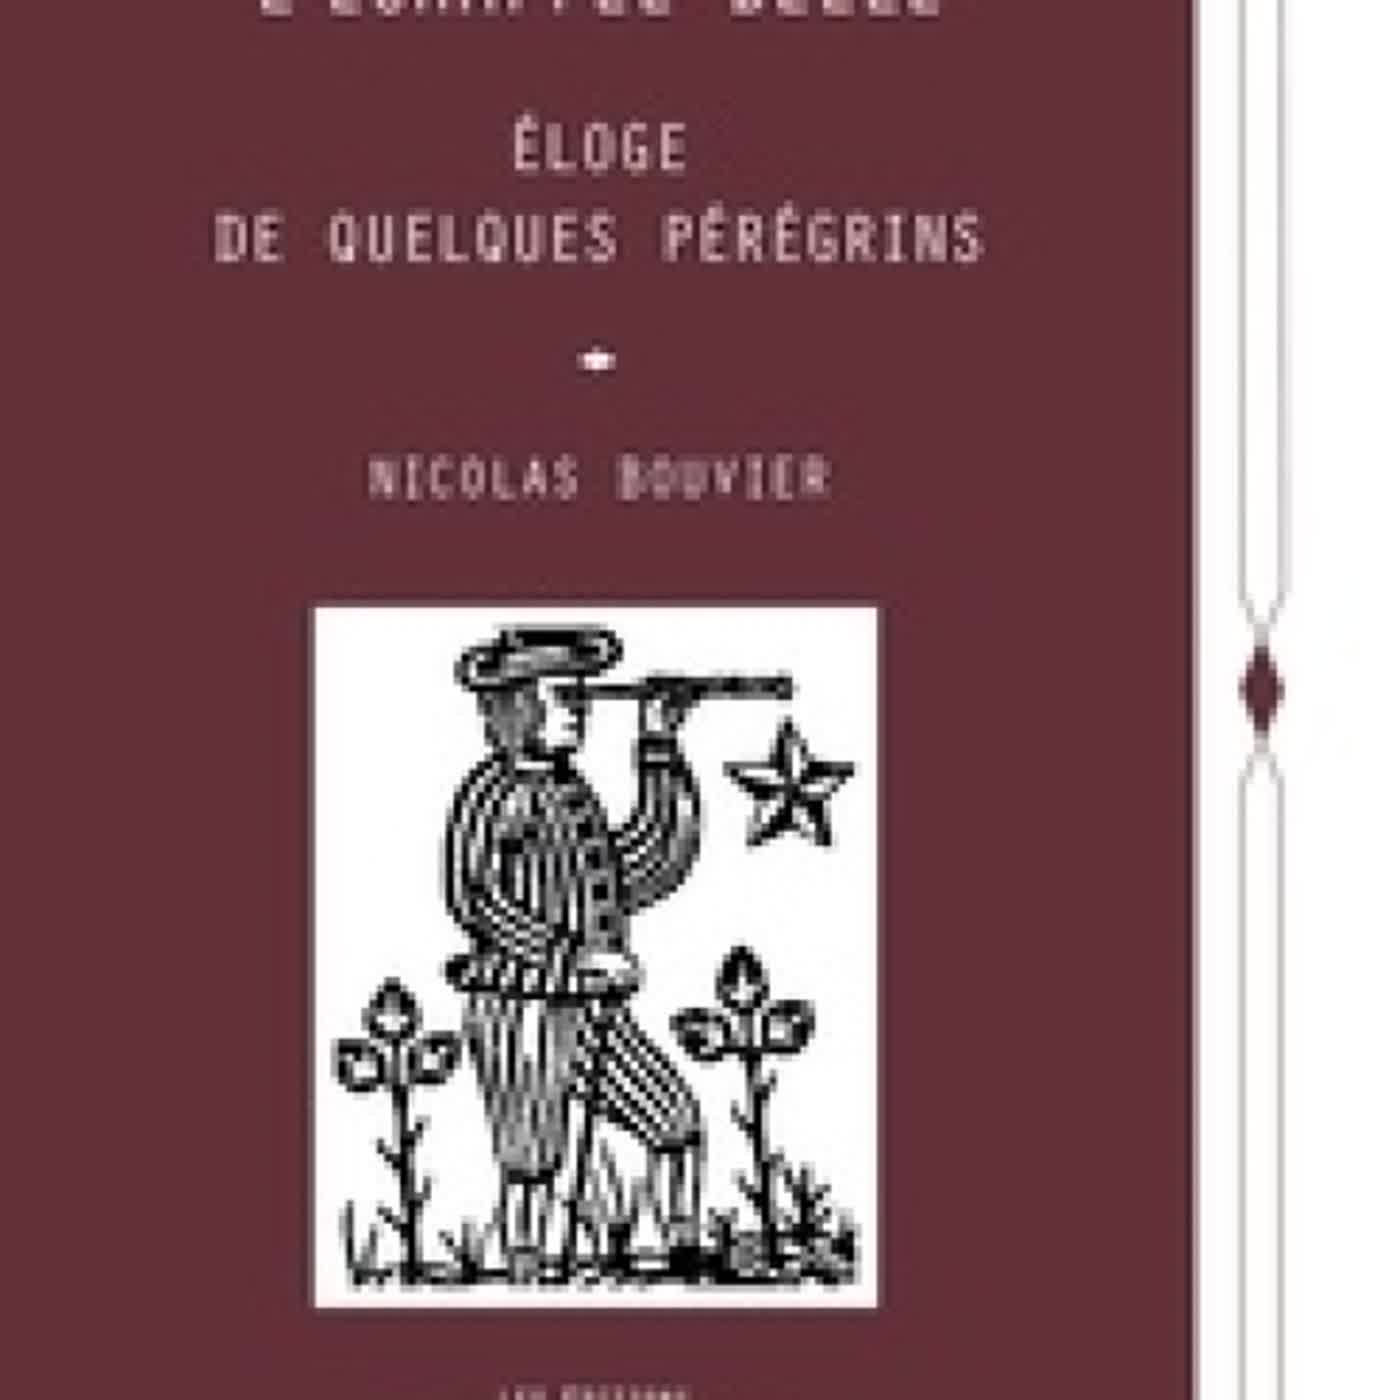 [PDF/Kindle] L'Echappée belle  - Eloge de quelques pérégrins by Nicolas Bouvier